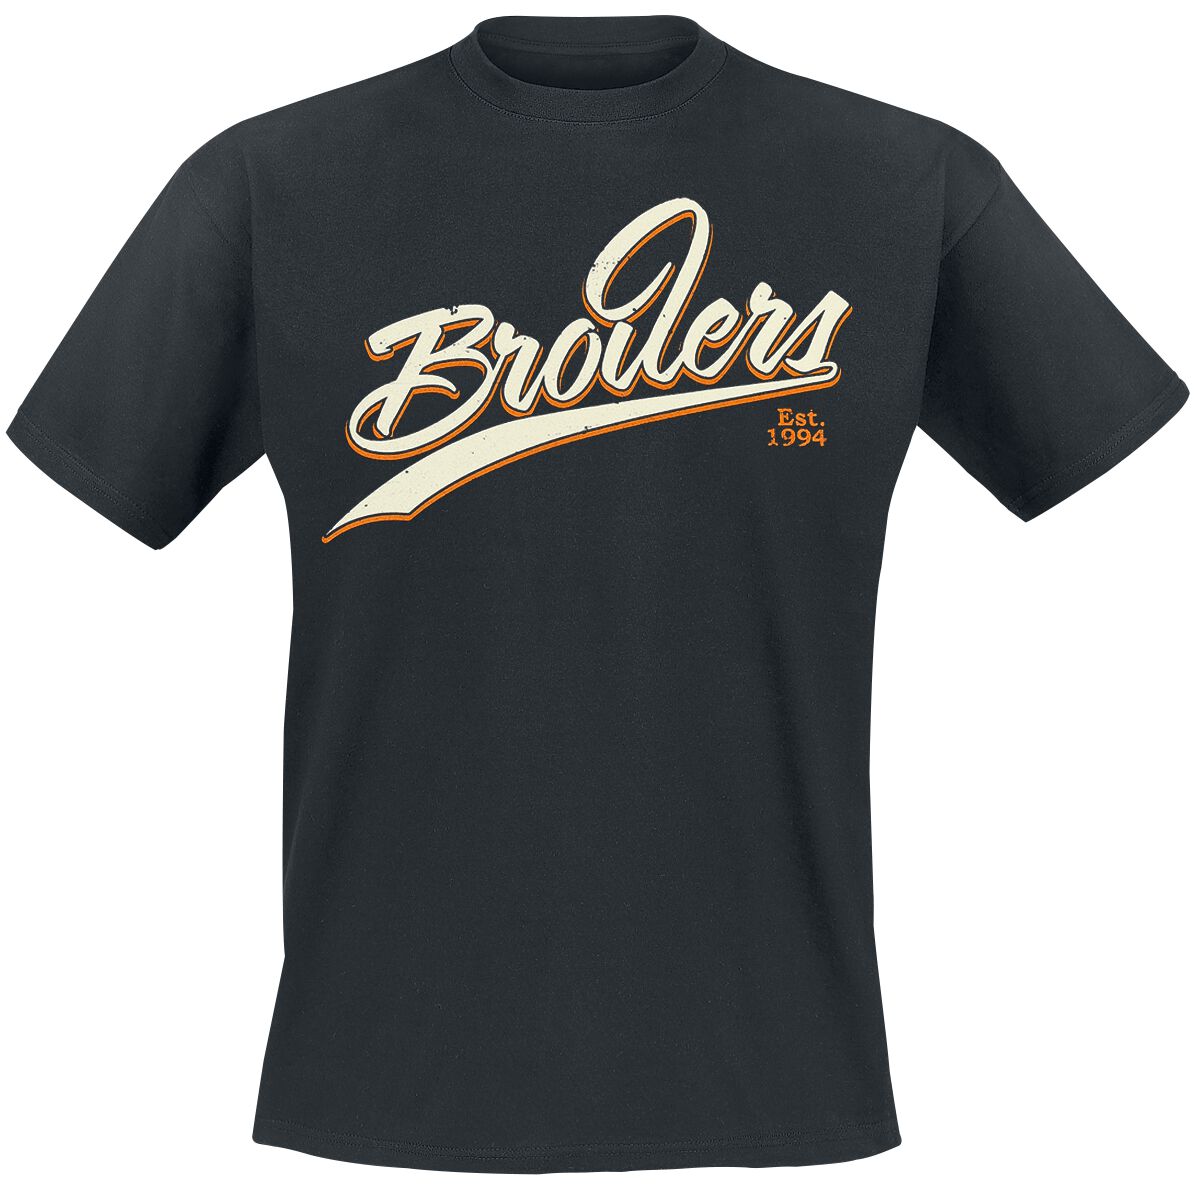 Broilers T-Shirt - League Of Its Own - M bis XXL - für Männer - Größe XXL - schwarz  - Lizenziertes Merchandise!